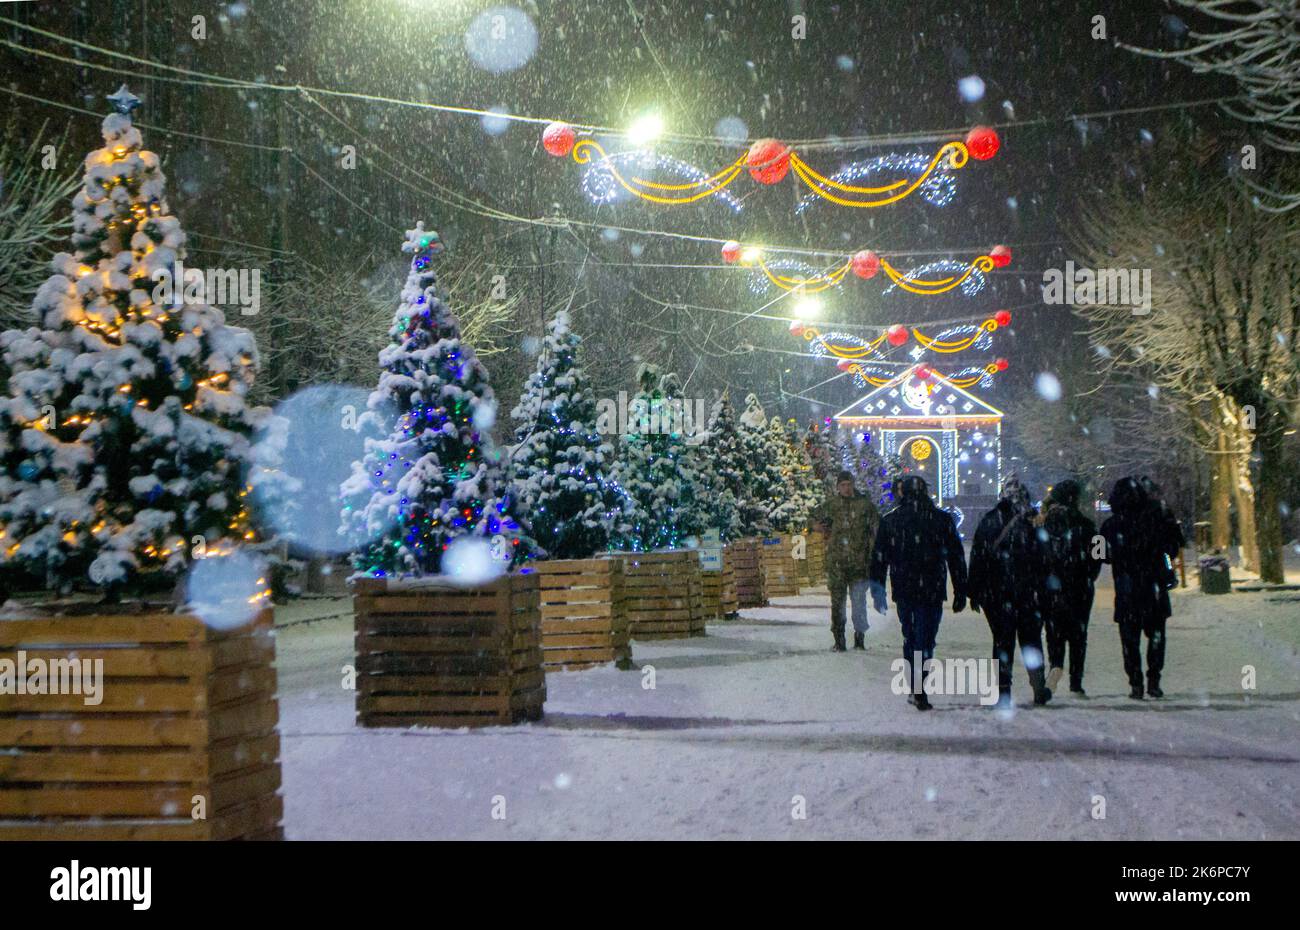 Strada cittadina durante le nevicate nella notte d'inverno. Bella illuminazione e decorazione sulla strada. Festa di Natale di Capodanno. Lanterne ghirlande sugli alberi. Foto Stock